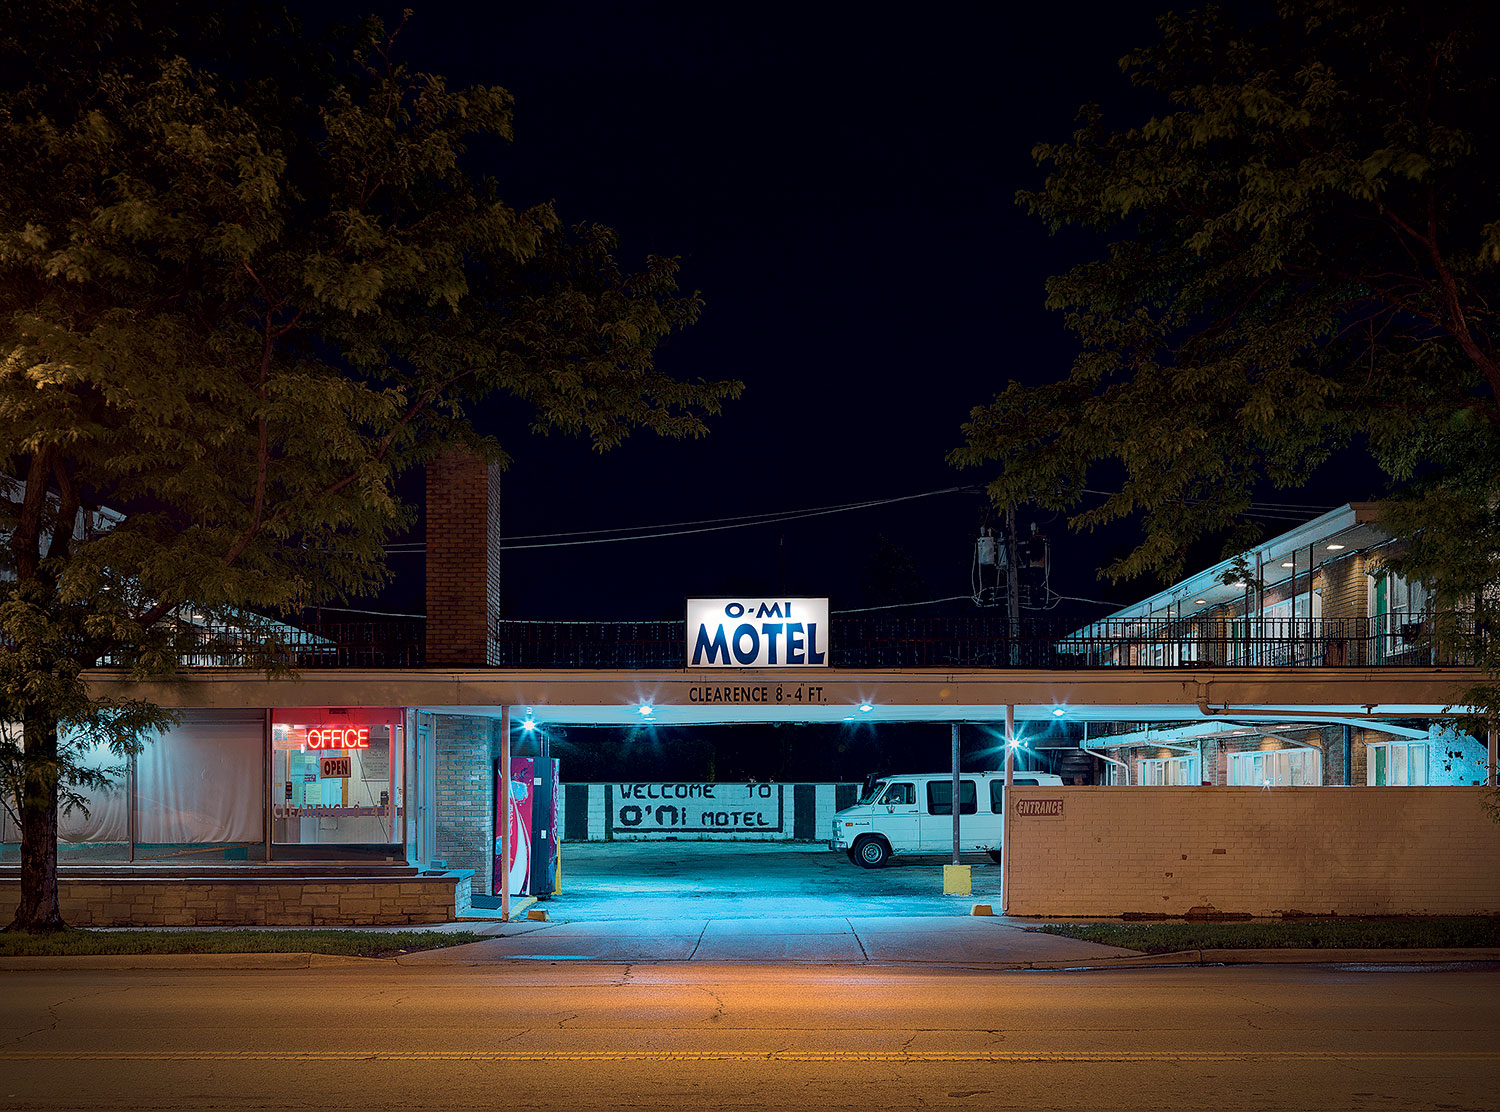 O-Mi Motel storefront